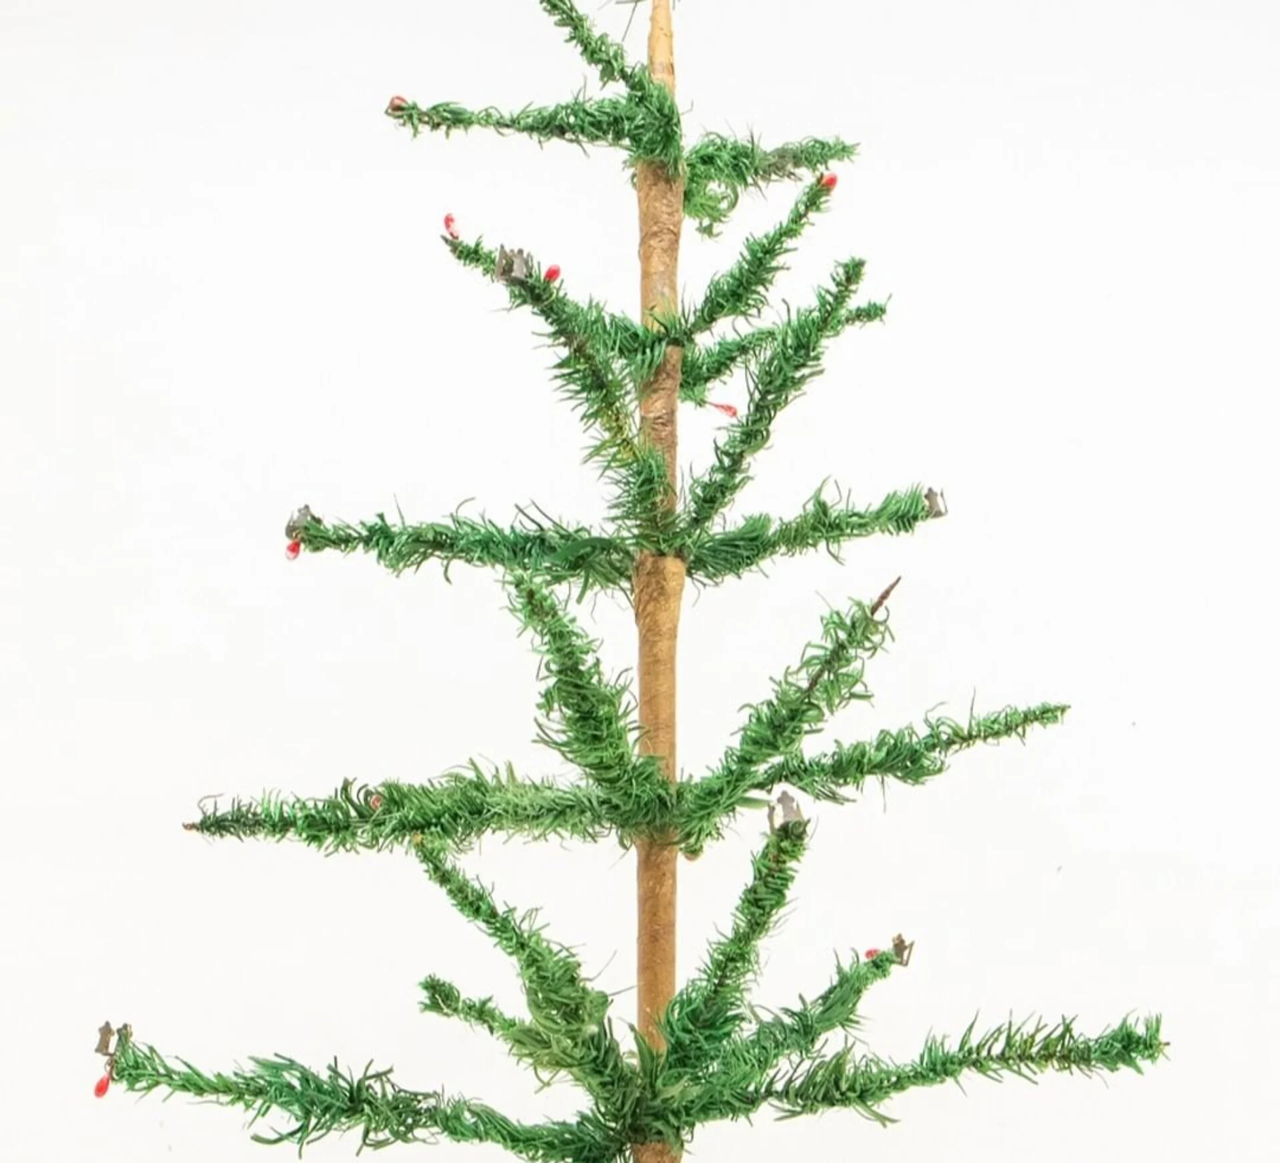 Δημοπρατήθηκε χριστουγεννιάτικο δέντρο 103 ετών